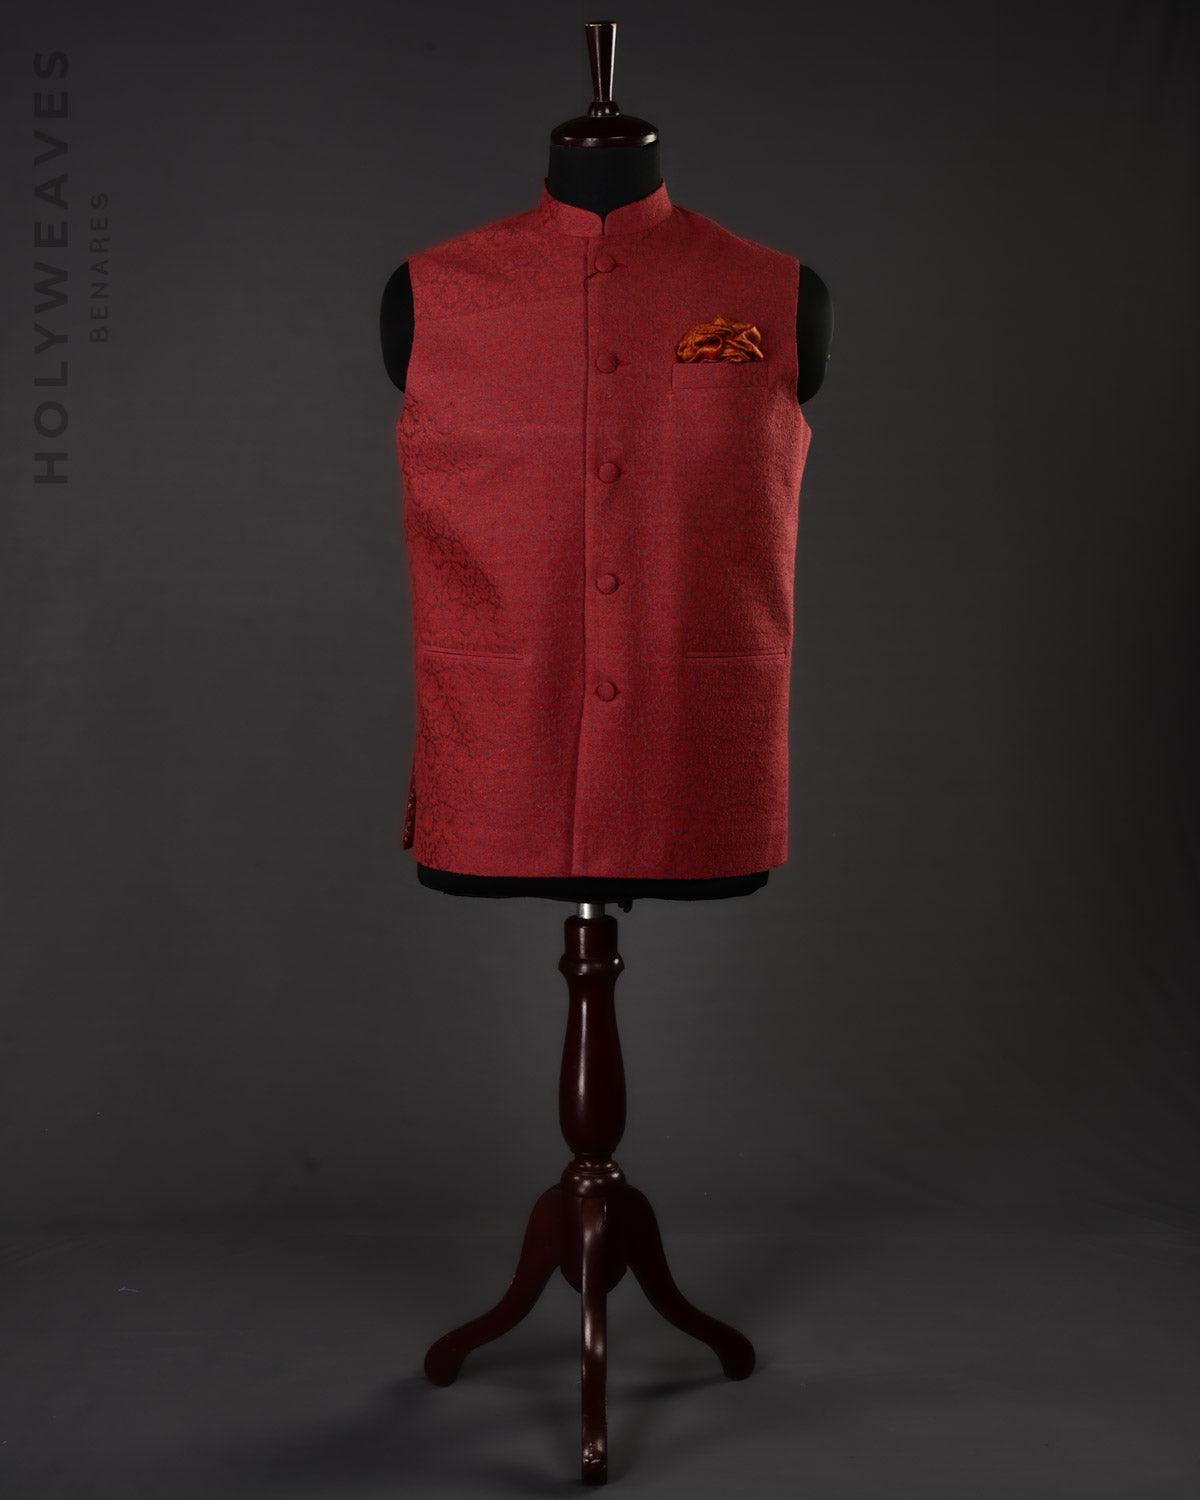 Maroon Banarasi Resham Damask Brocade Handwoven Noile Silk Mens Modi Jacket - By HolyWeaves, Benares